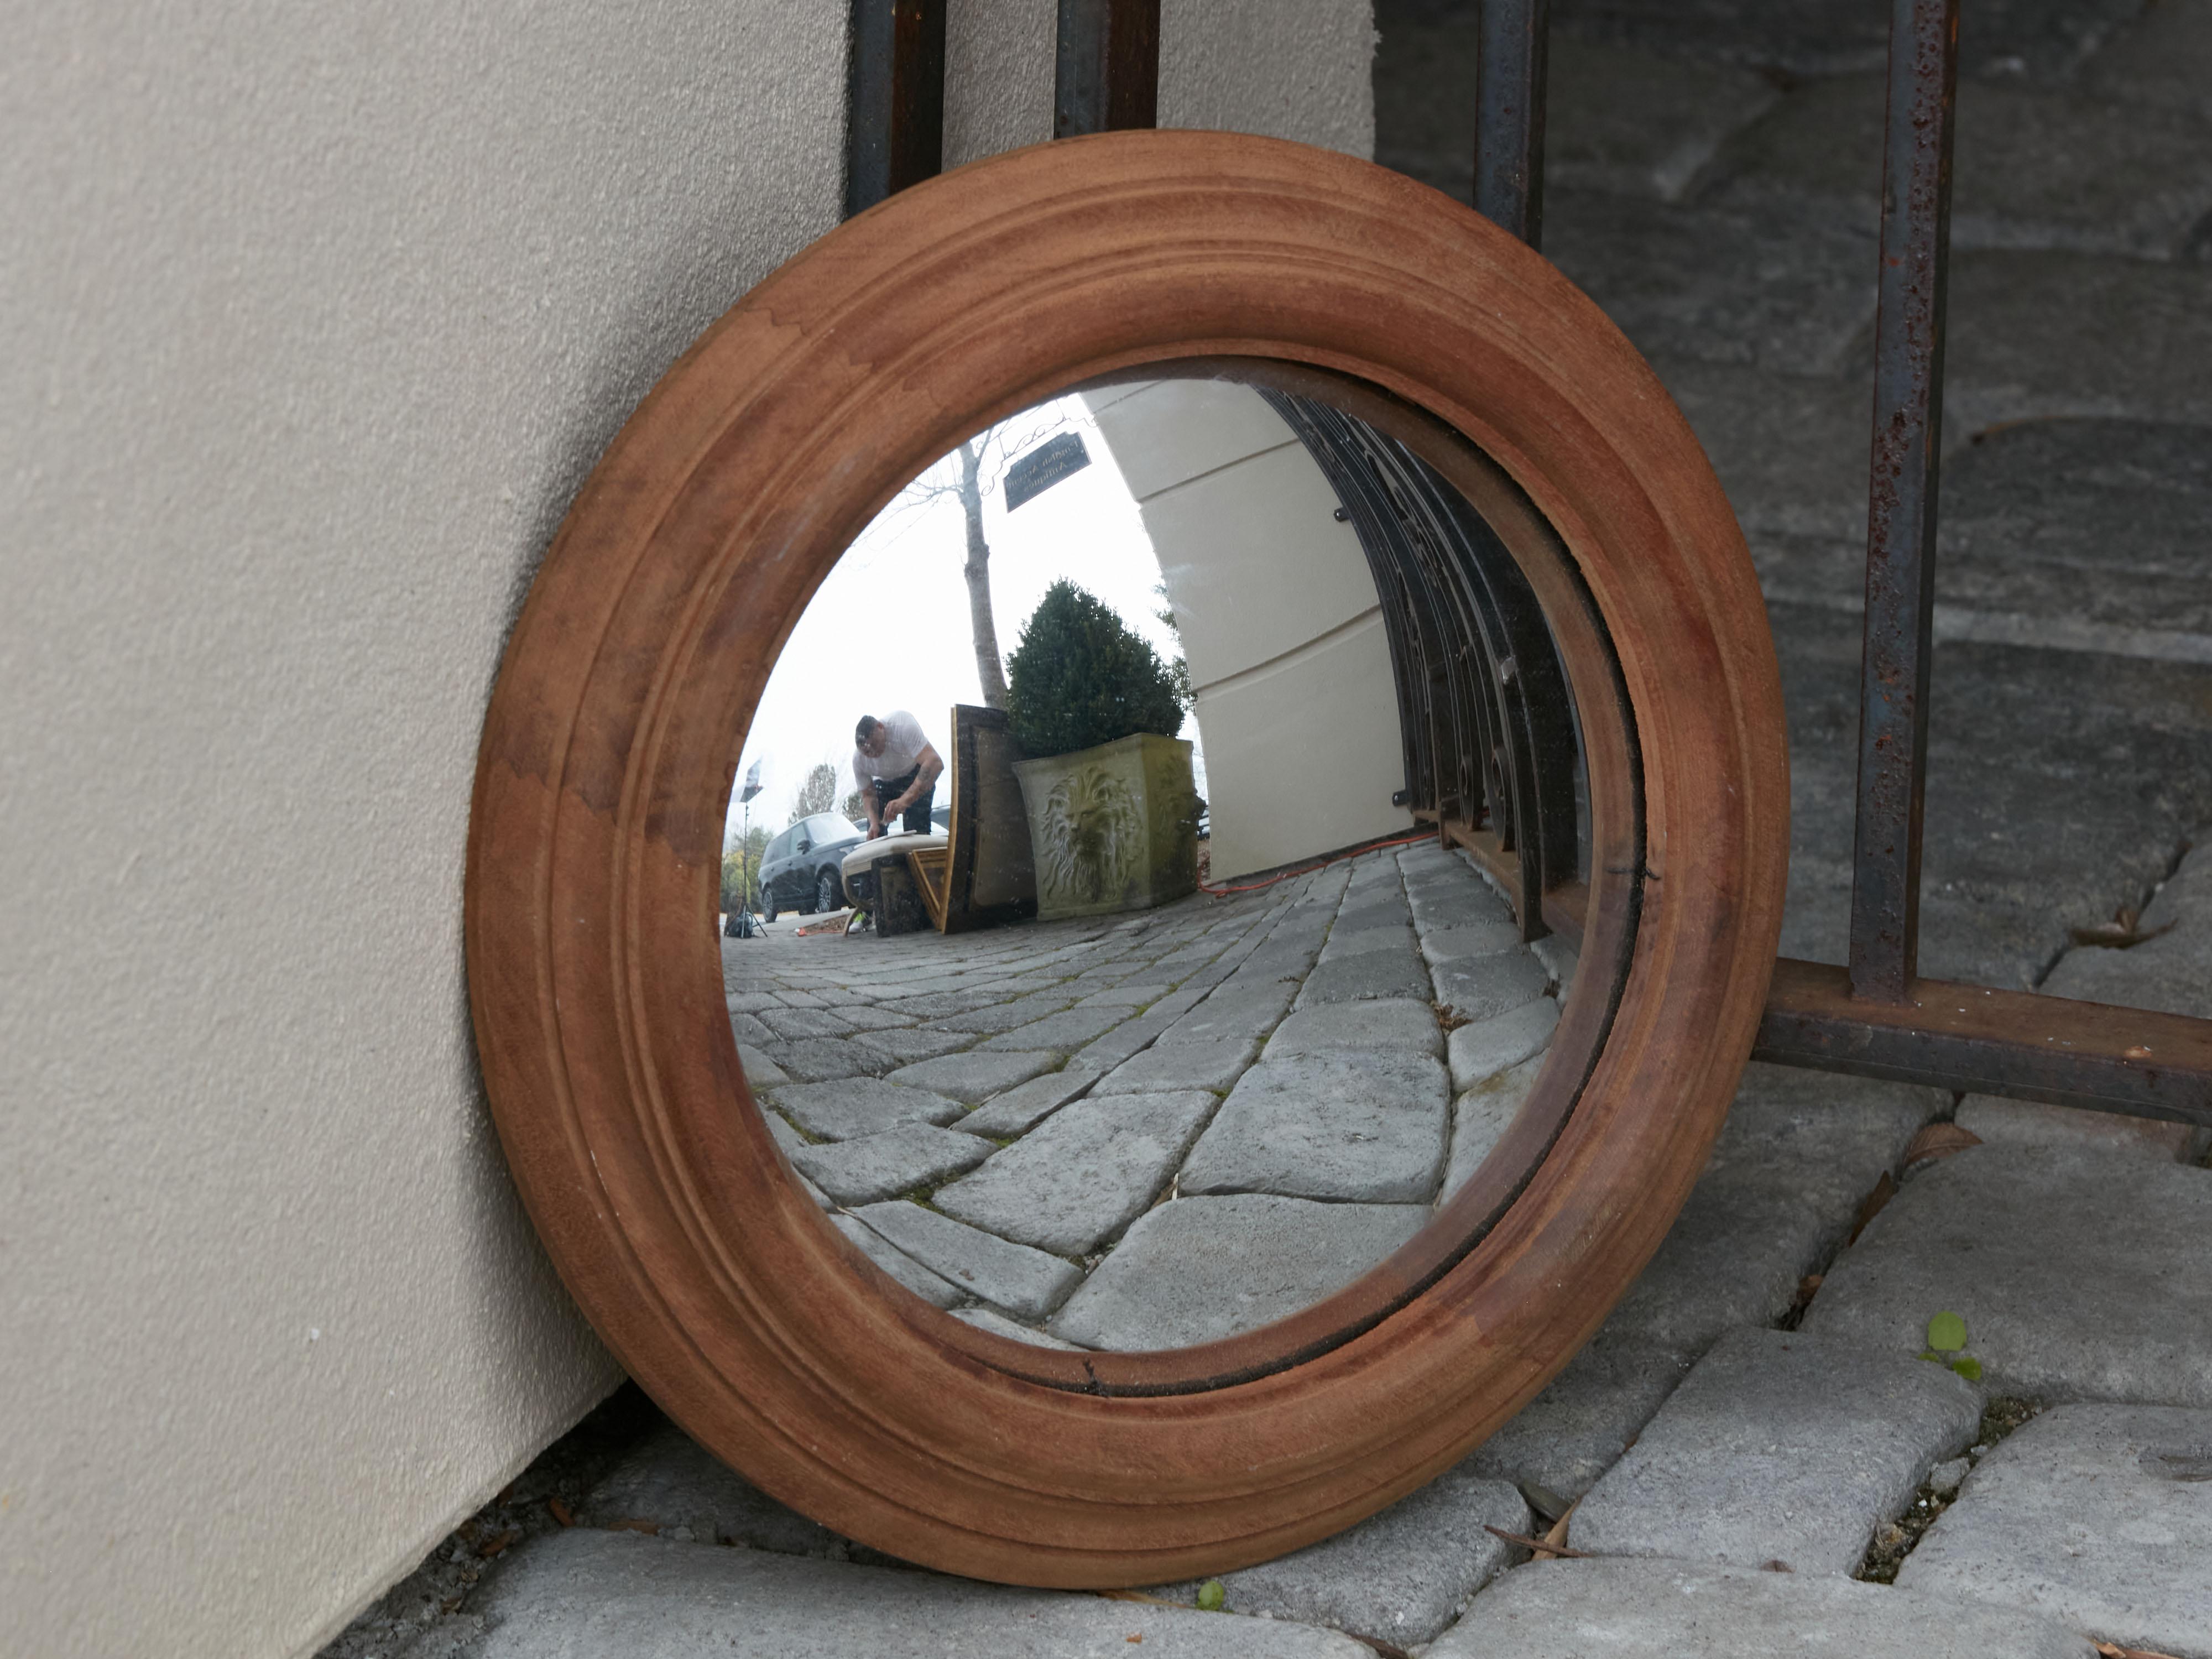 Un miroir anglais convexe à œil de bœuf avec cadre moulé. Créé en Angleterre, ce miroir mural présente un cadre circulaire simple avec des accents moulés, entourant un miroir convexe recherché pour son reflet déformé. Un ajout élégant à n'importe